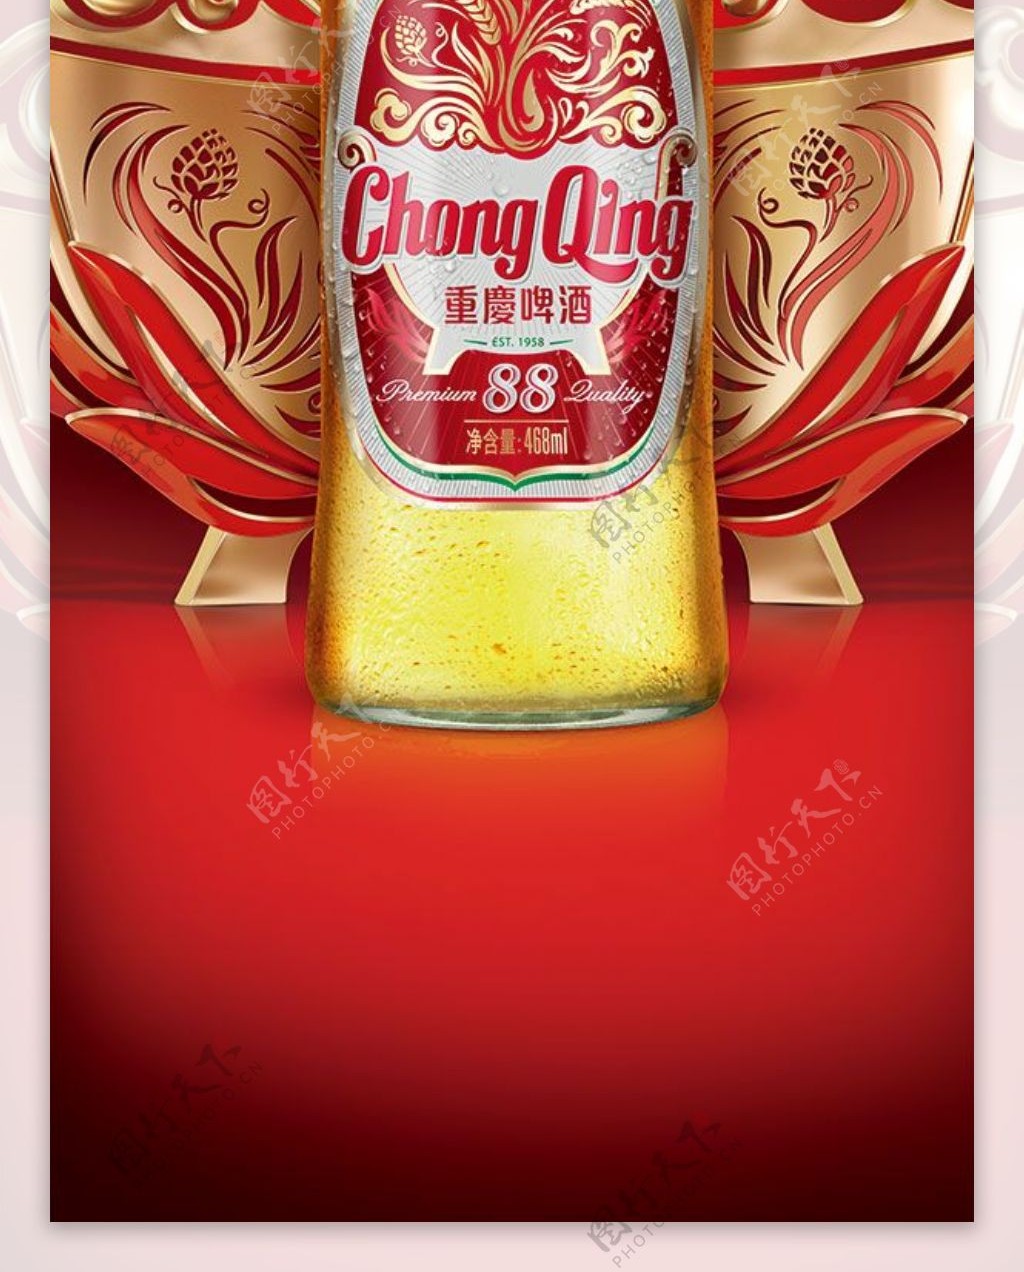 重庆啤酒广告免费下载